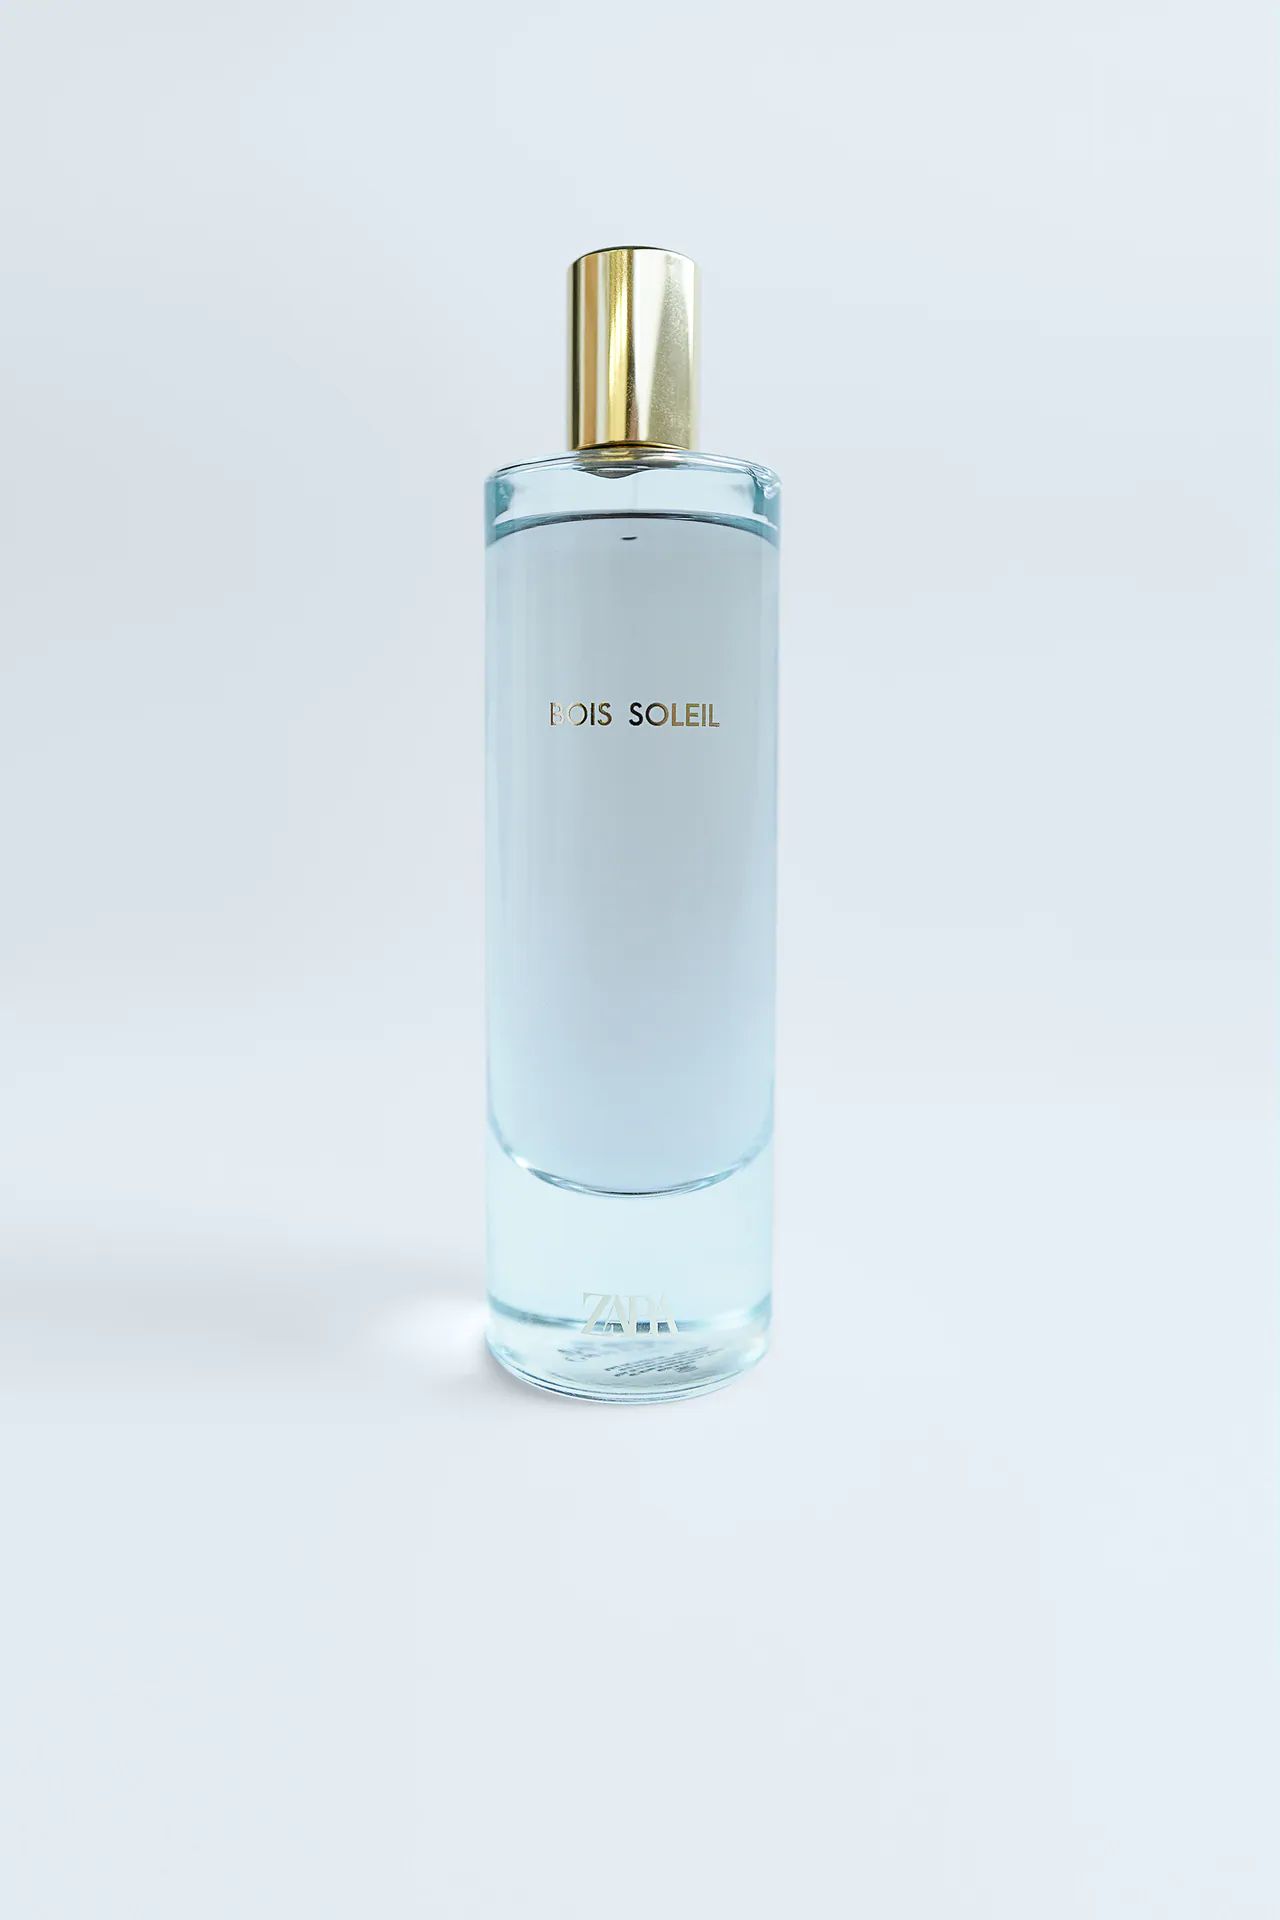 Bois Soleil For Her Zara parfum - un nouveau parfum pour femme 2020